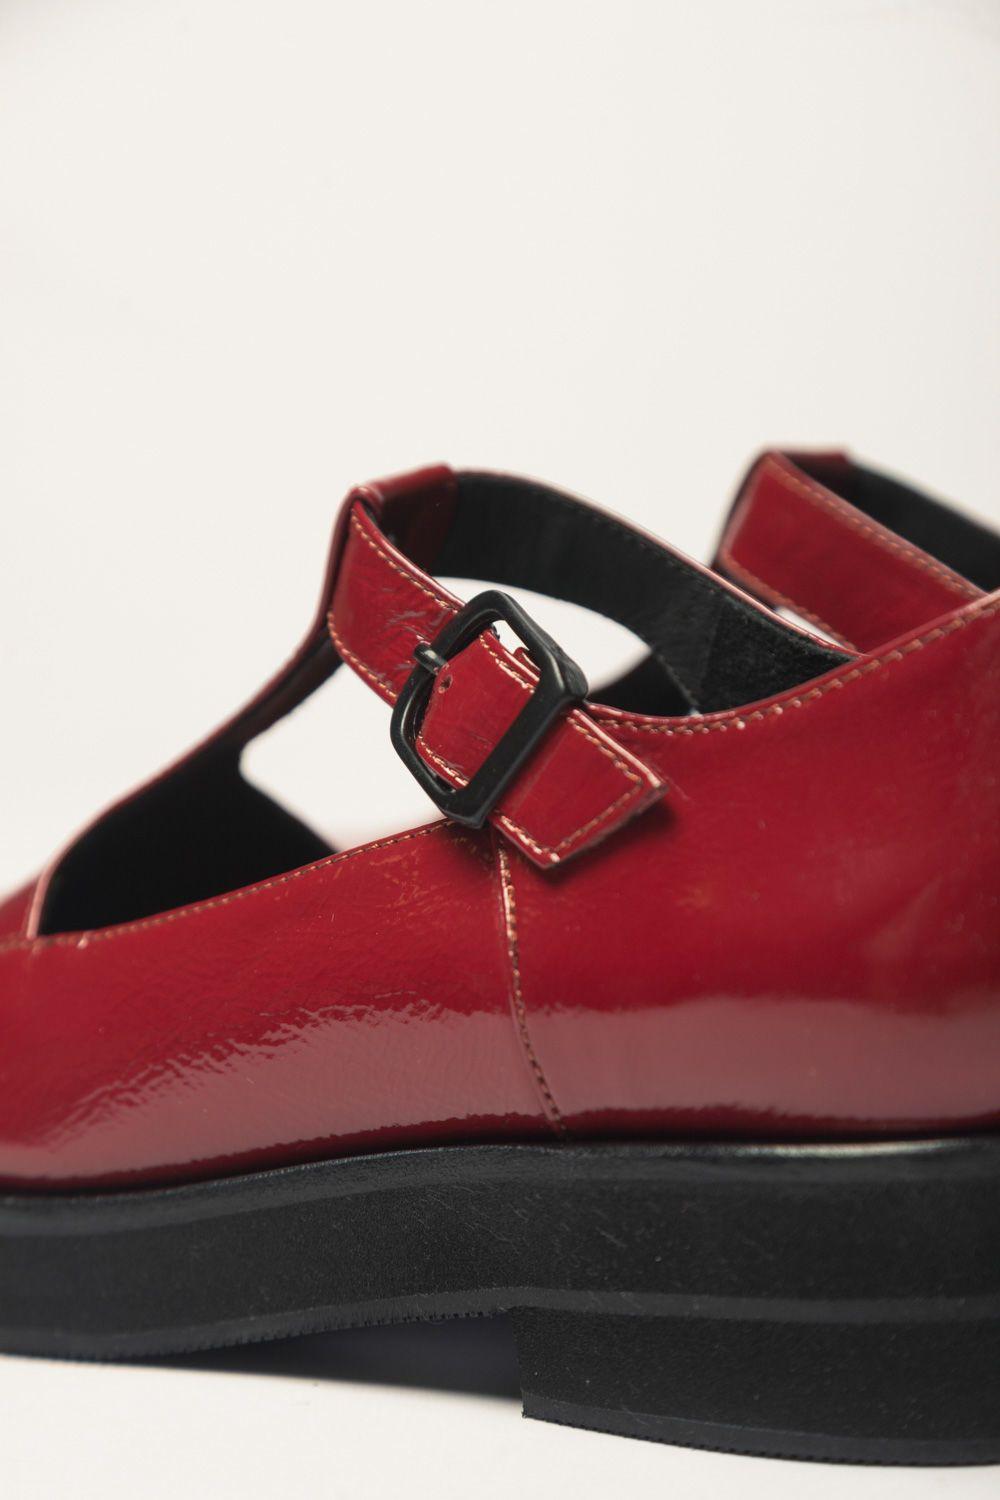 Zapato Guillermina Rojo 40